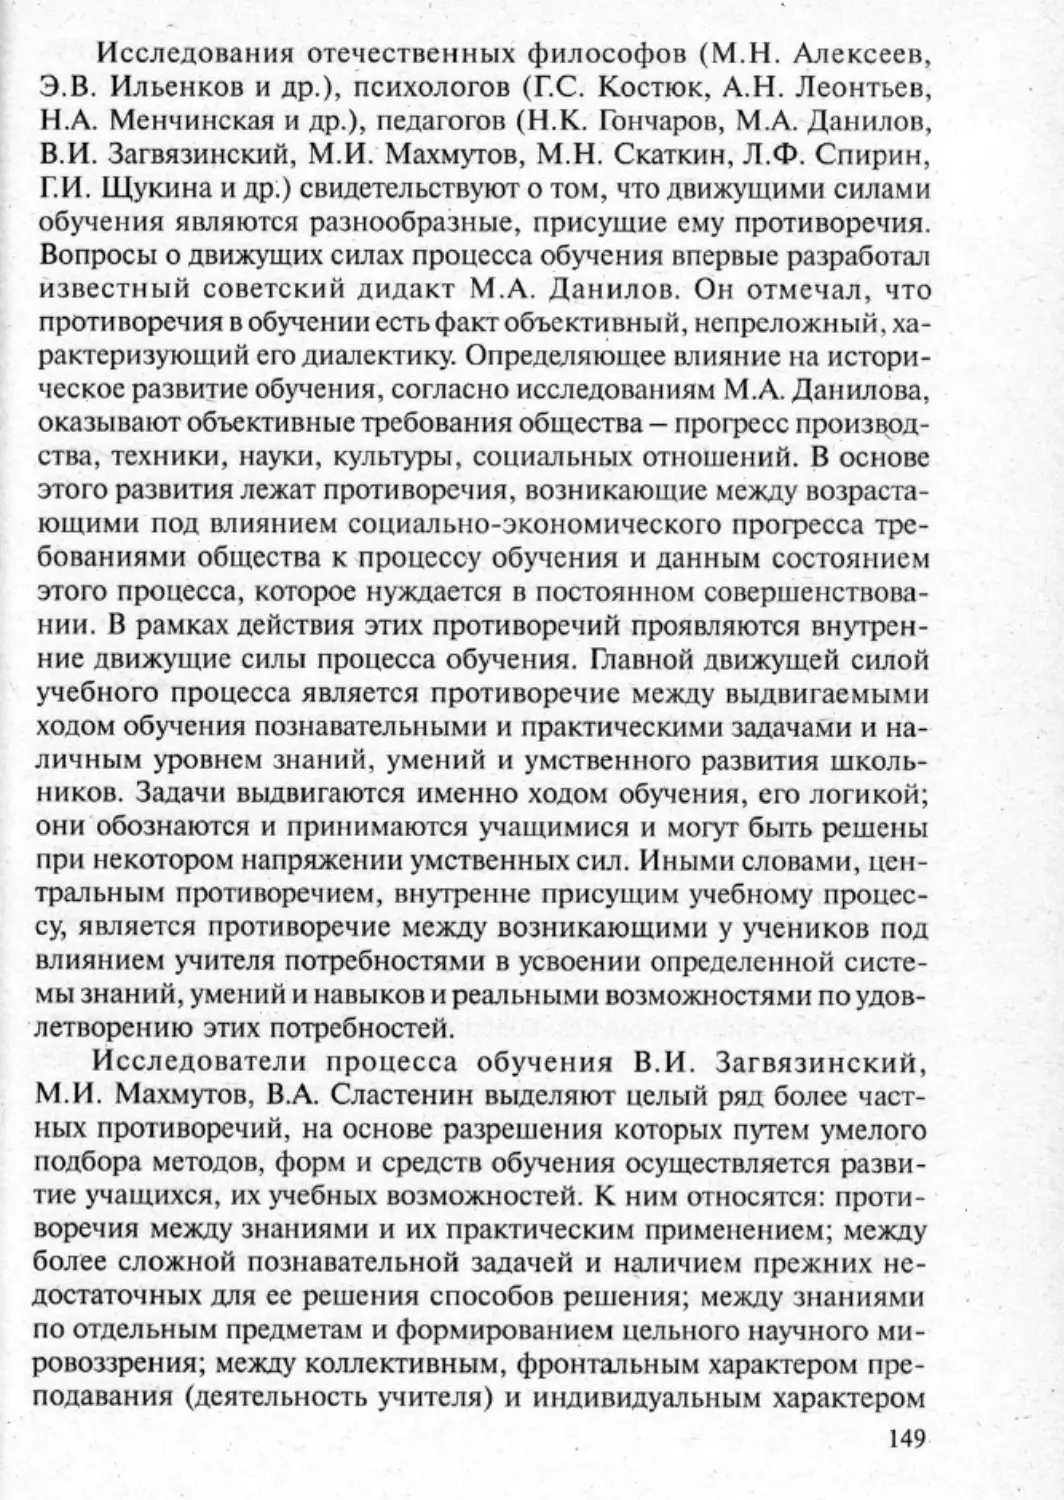 Загрекова Л.В., Николаева В.В - 0150